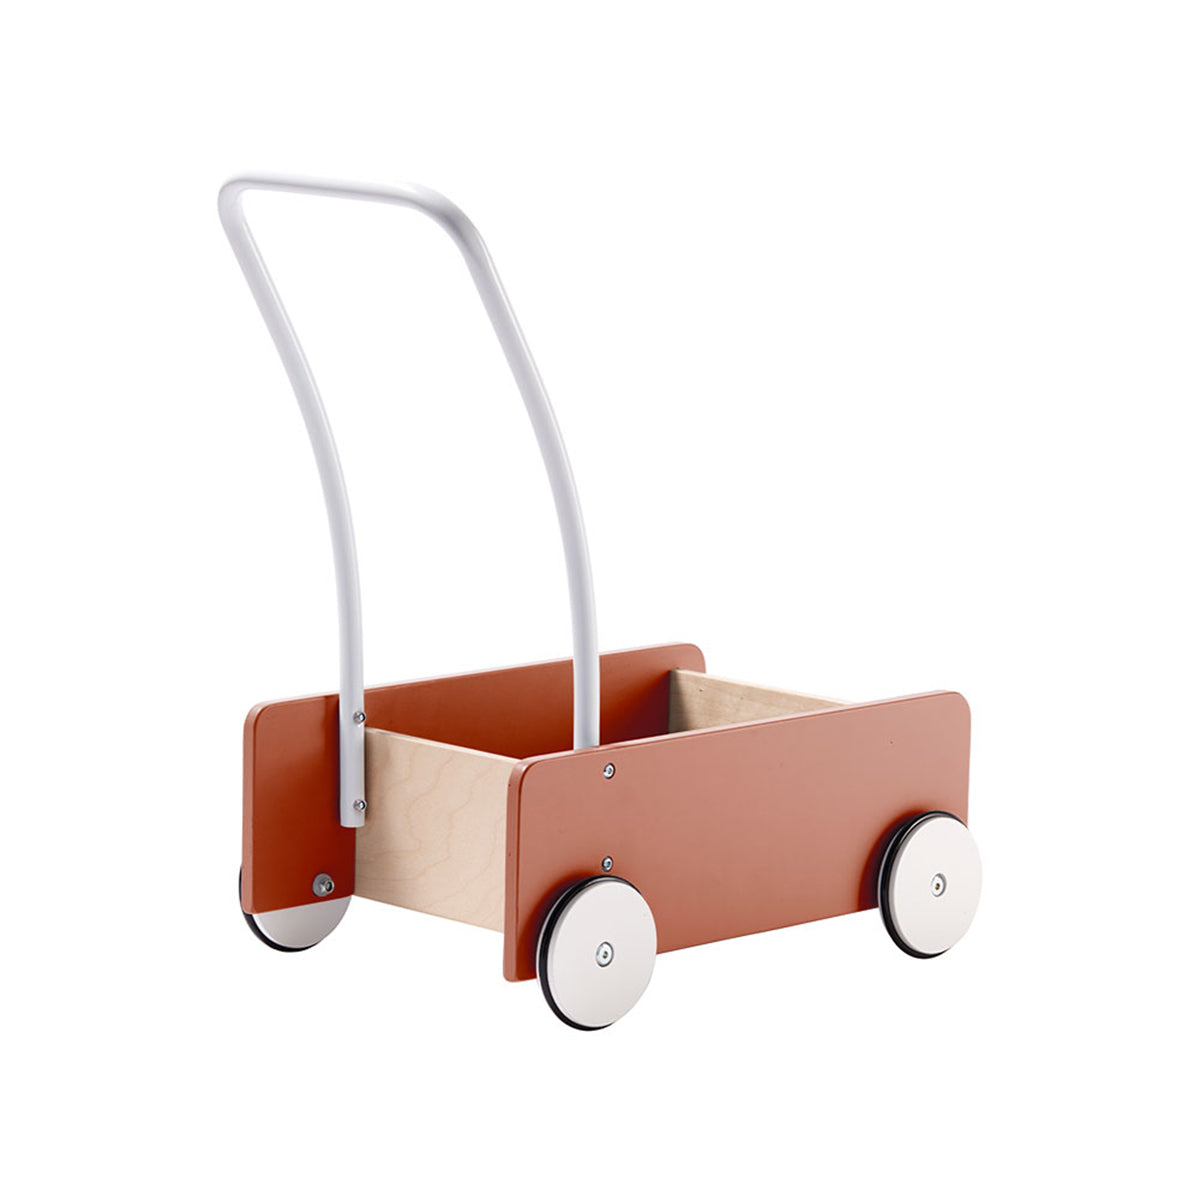 De Kid's Concept loopwagen roest is het perfecte accessoire voor alle kindjes die net leren lopen. Dankzij deze leuke loopkar hebben ze net dat beetje extra steun en stabiliteit. VanZus.